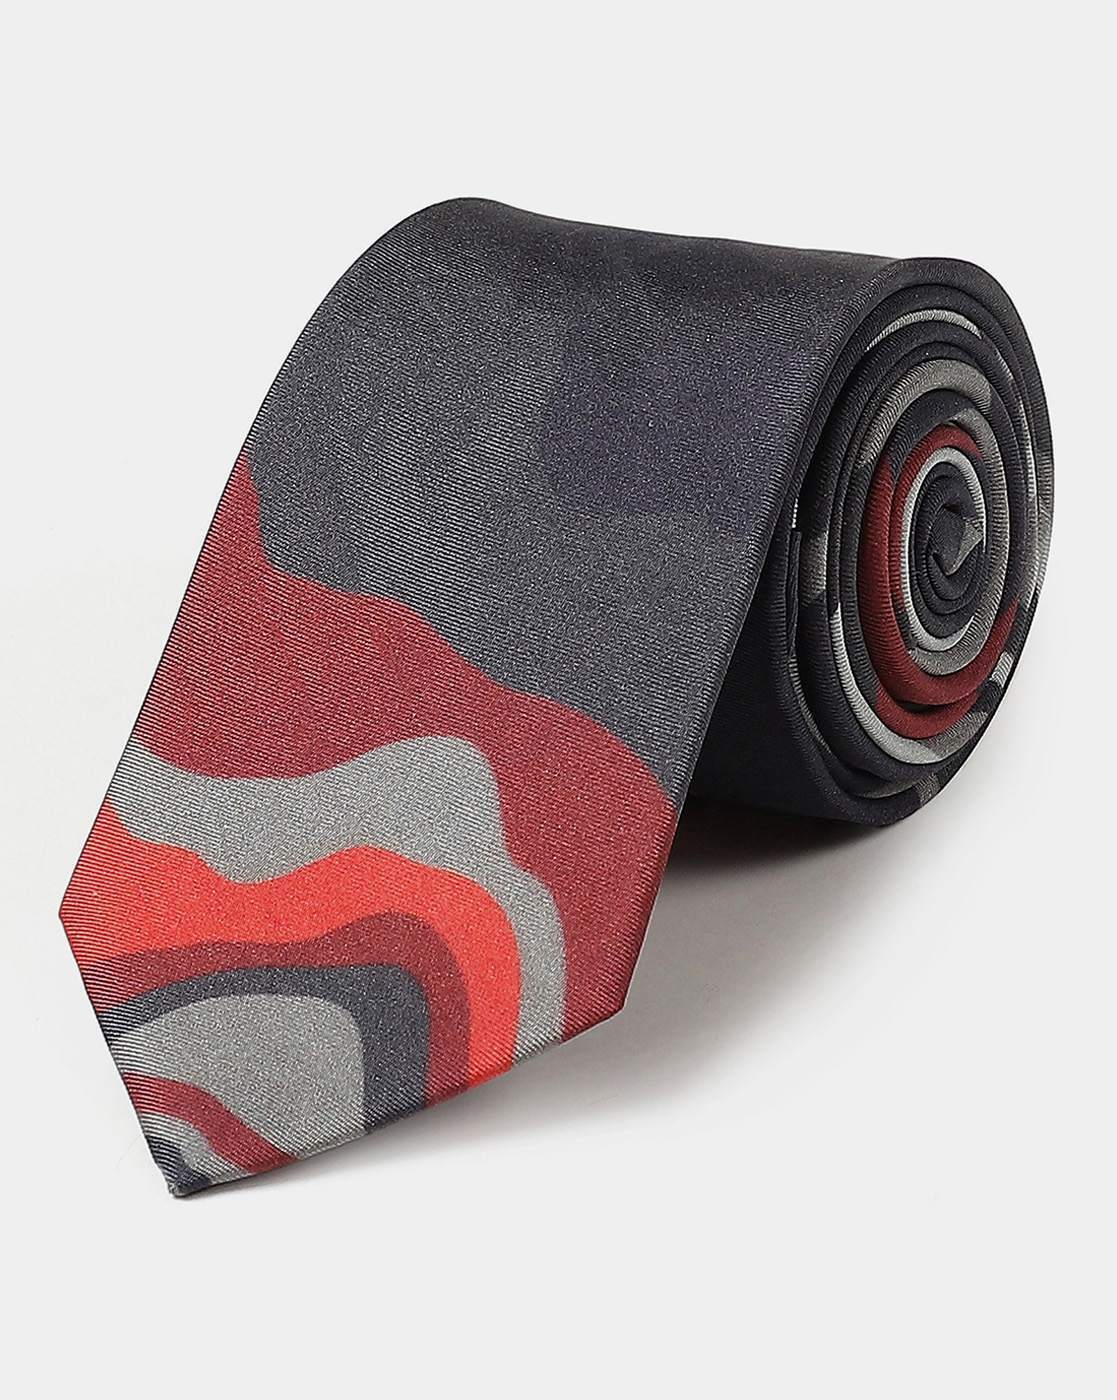 Buy Black Ties for Men by SATYA PAUL Online